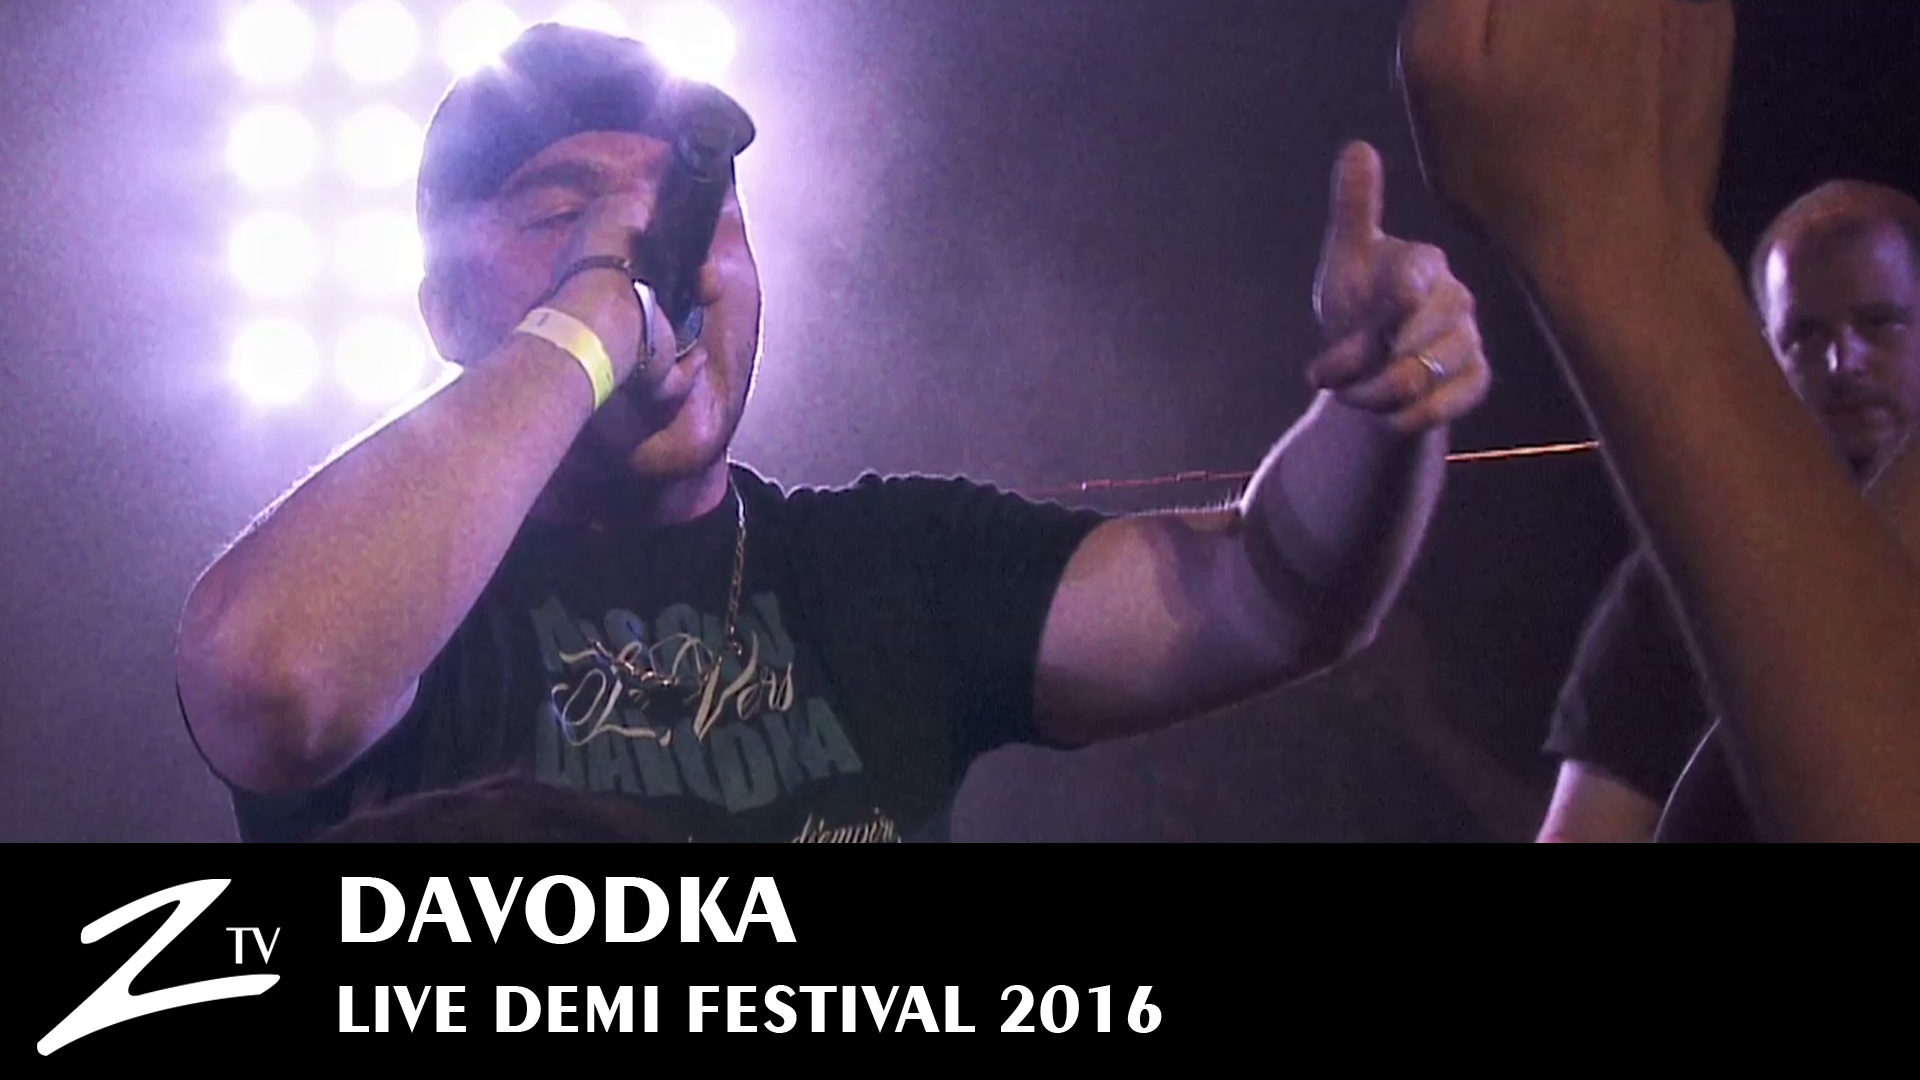 Davodka - Demi Festival 2016 - Zycopolis